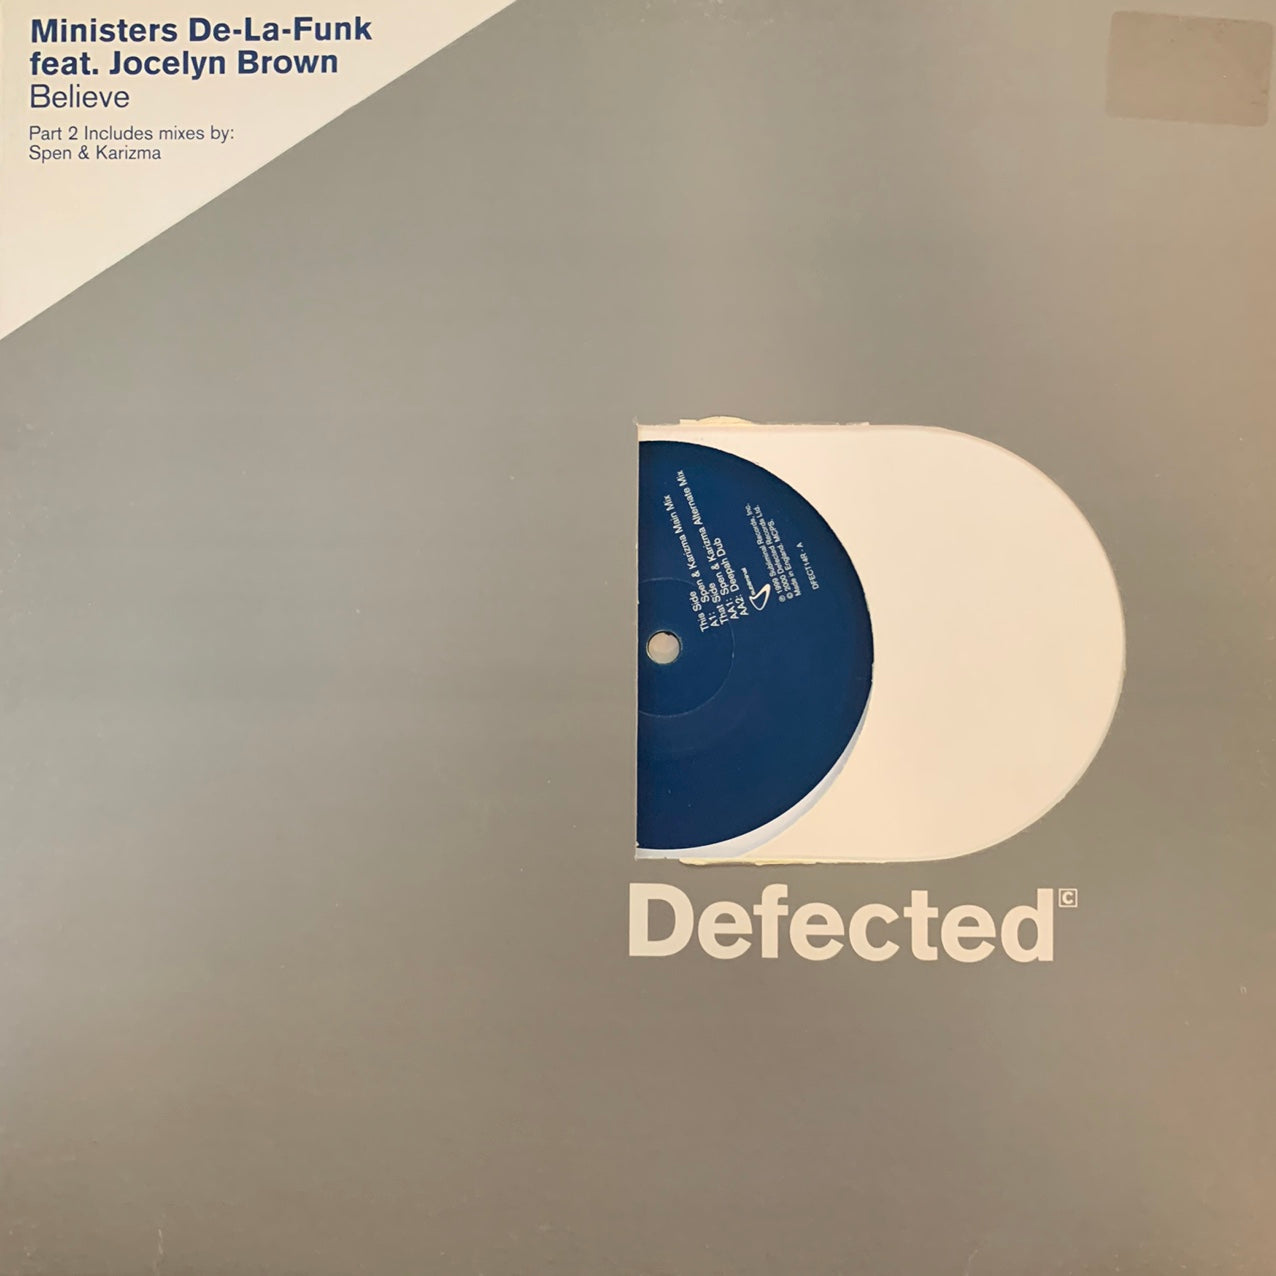 Ministers De La Funk Feat Jocelyn Brown “Believe” 3 Track 12inch Vinyl on Defected Records